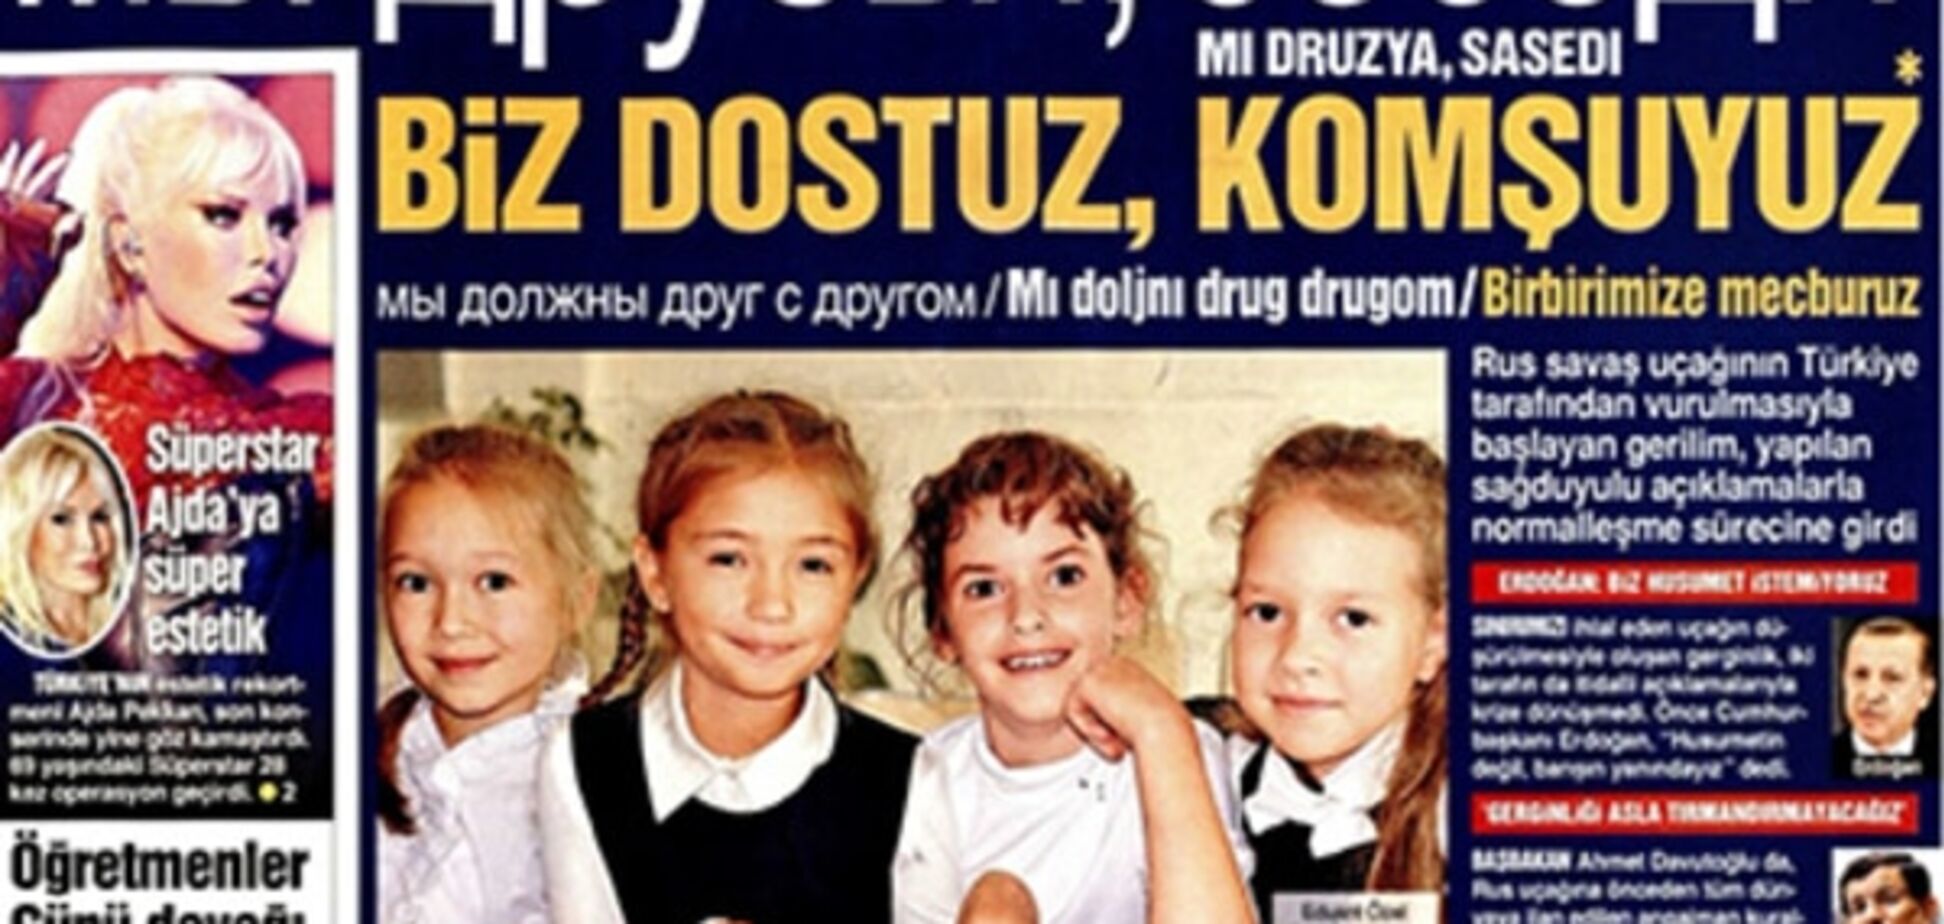 'Ми друзі, сусіди': турецька газета вийшла з російським заголовком, фотофакт